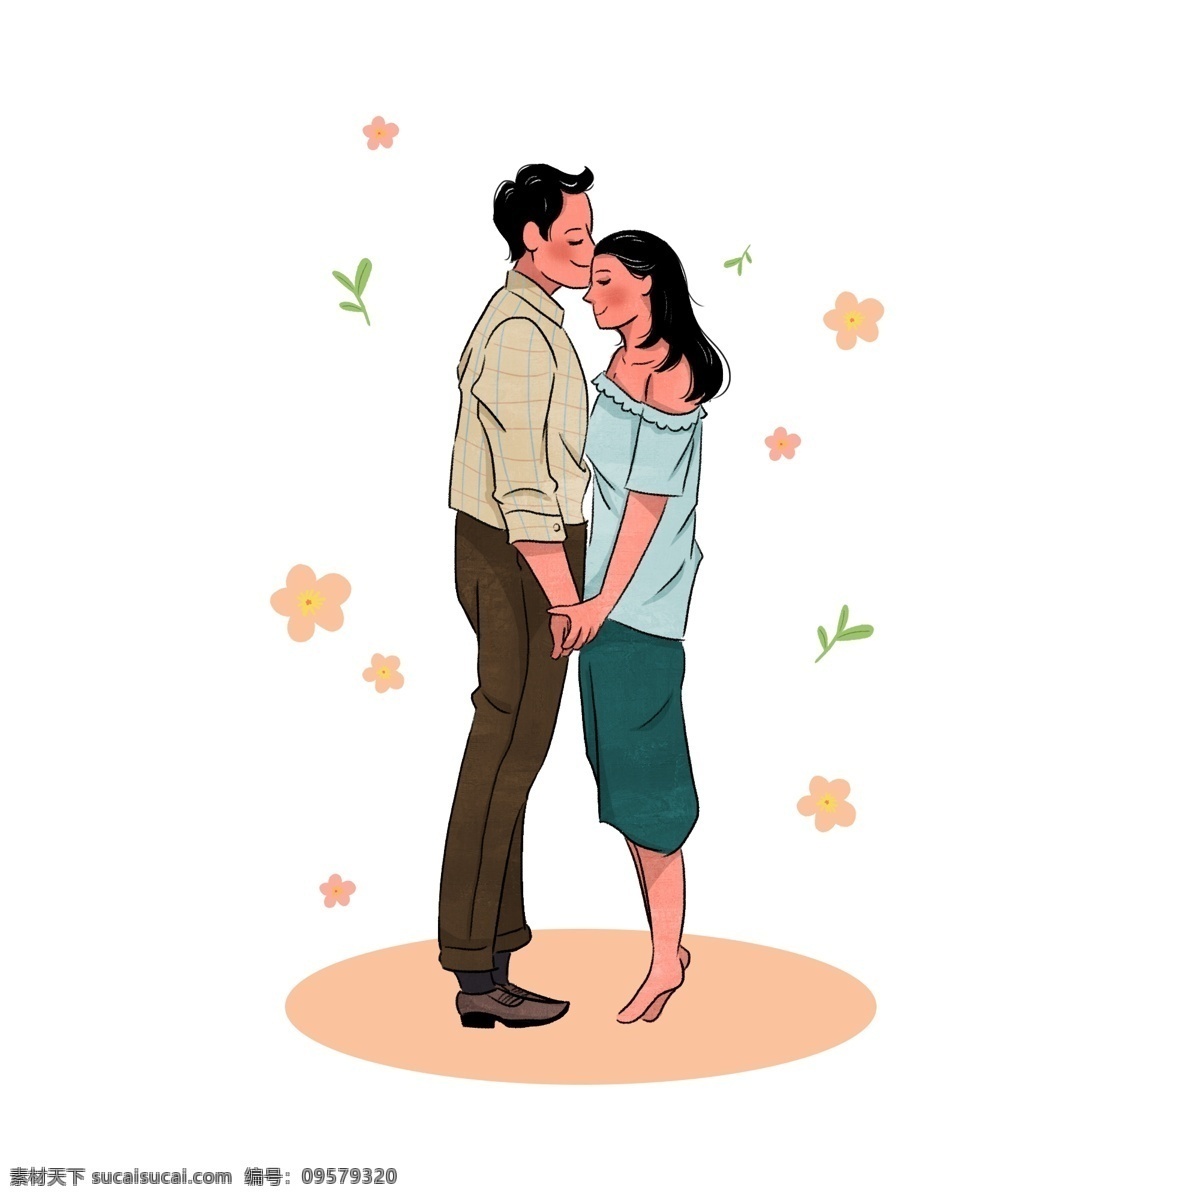 七夕节 亲密 相 拥 情侣 元素 情人节 拥抱 亲吻 爱人 爱情 卡通 可爱 手绘